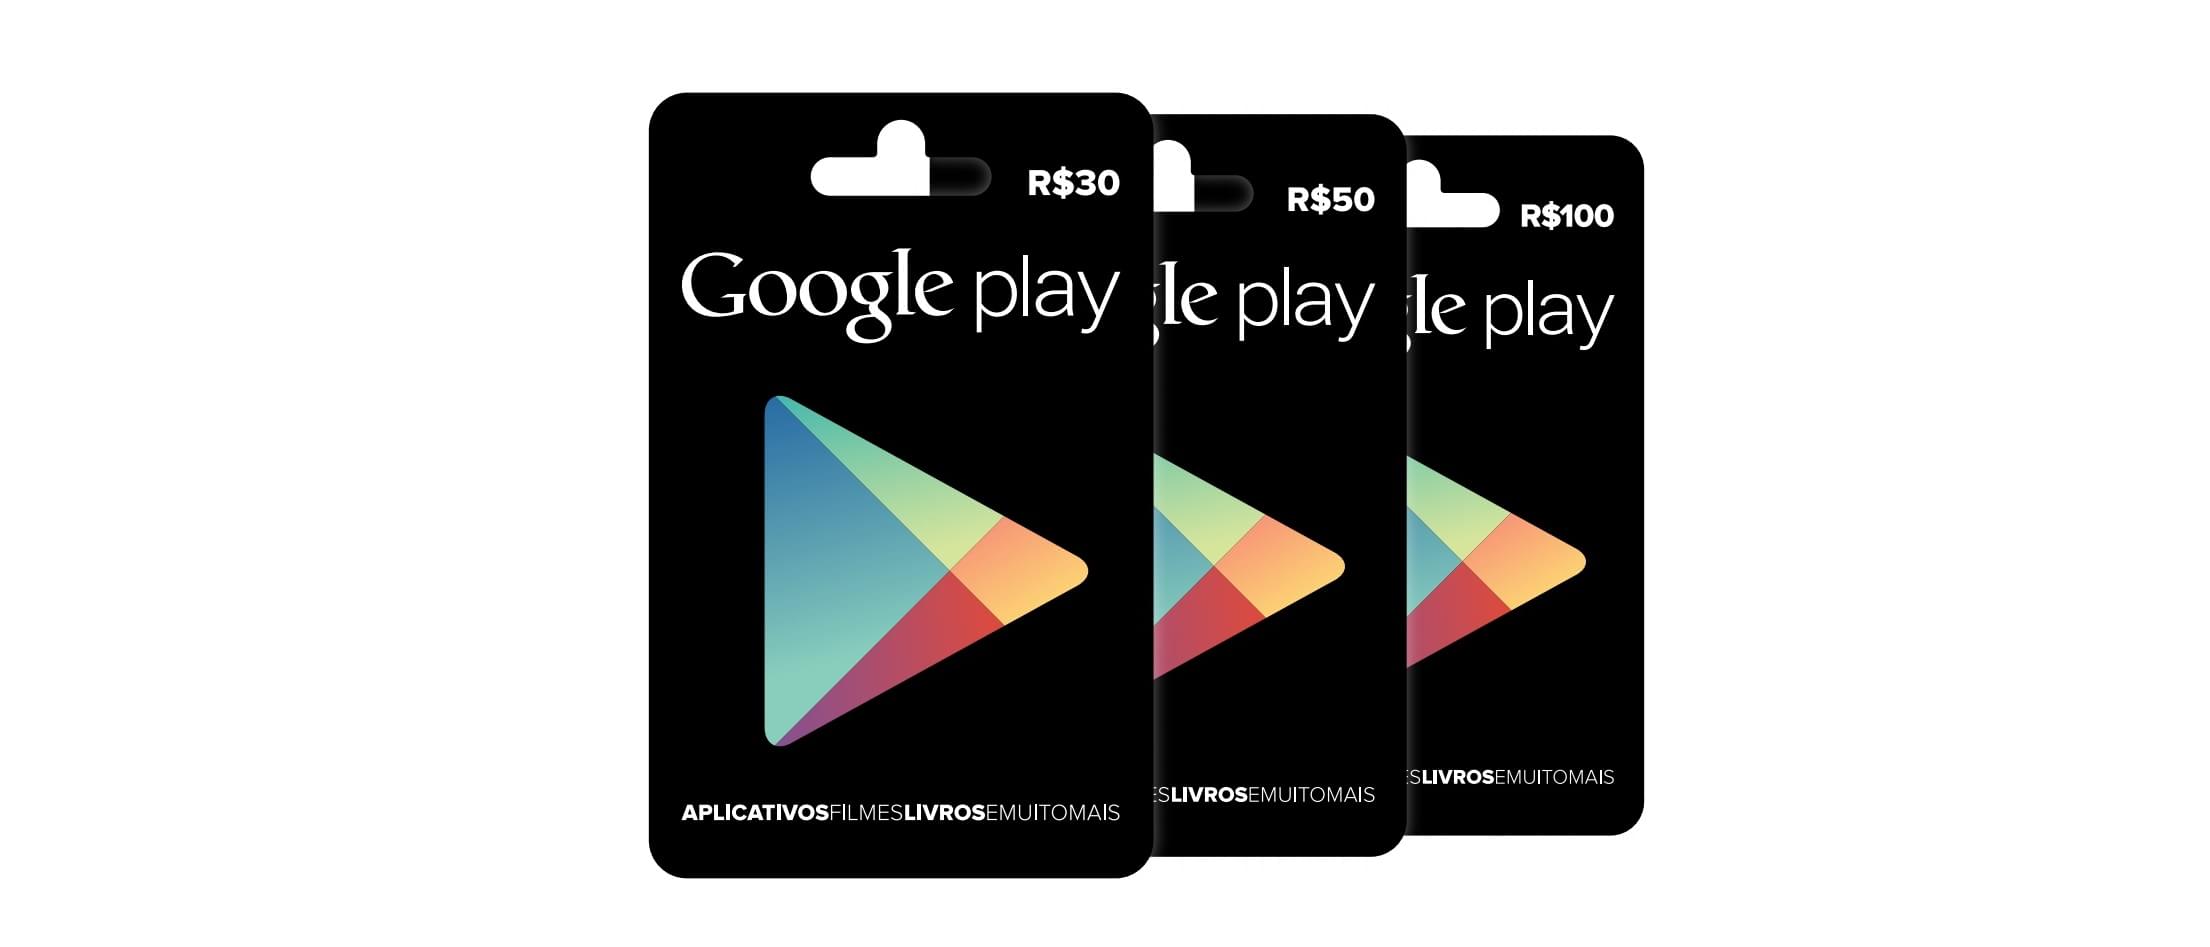 Google Play Gift Cards Brasileiros Podem Ser Encontrados A Partir De Hoje Tecmundo - cartao google play como funciona para ganhar robux